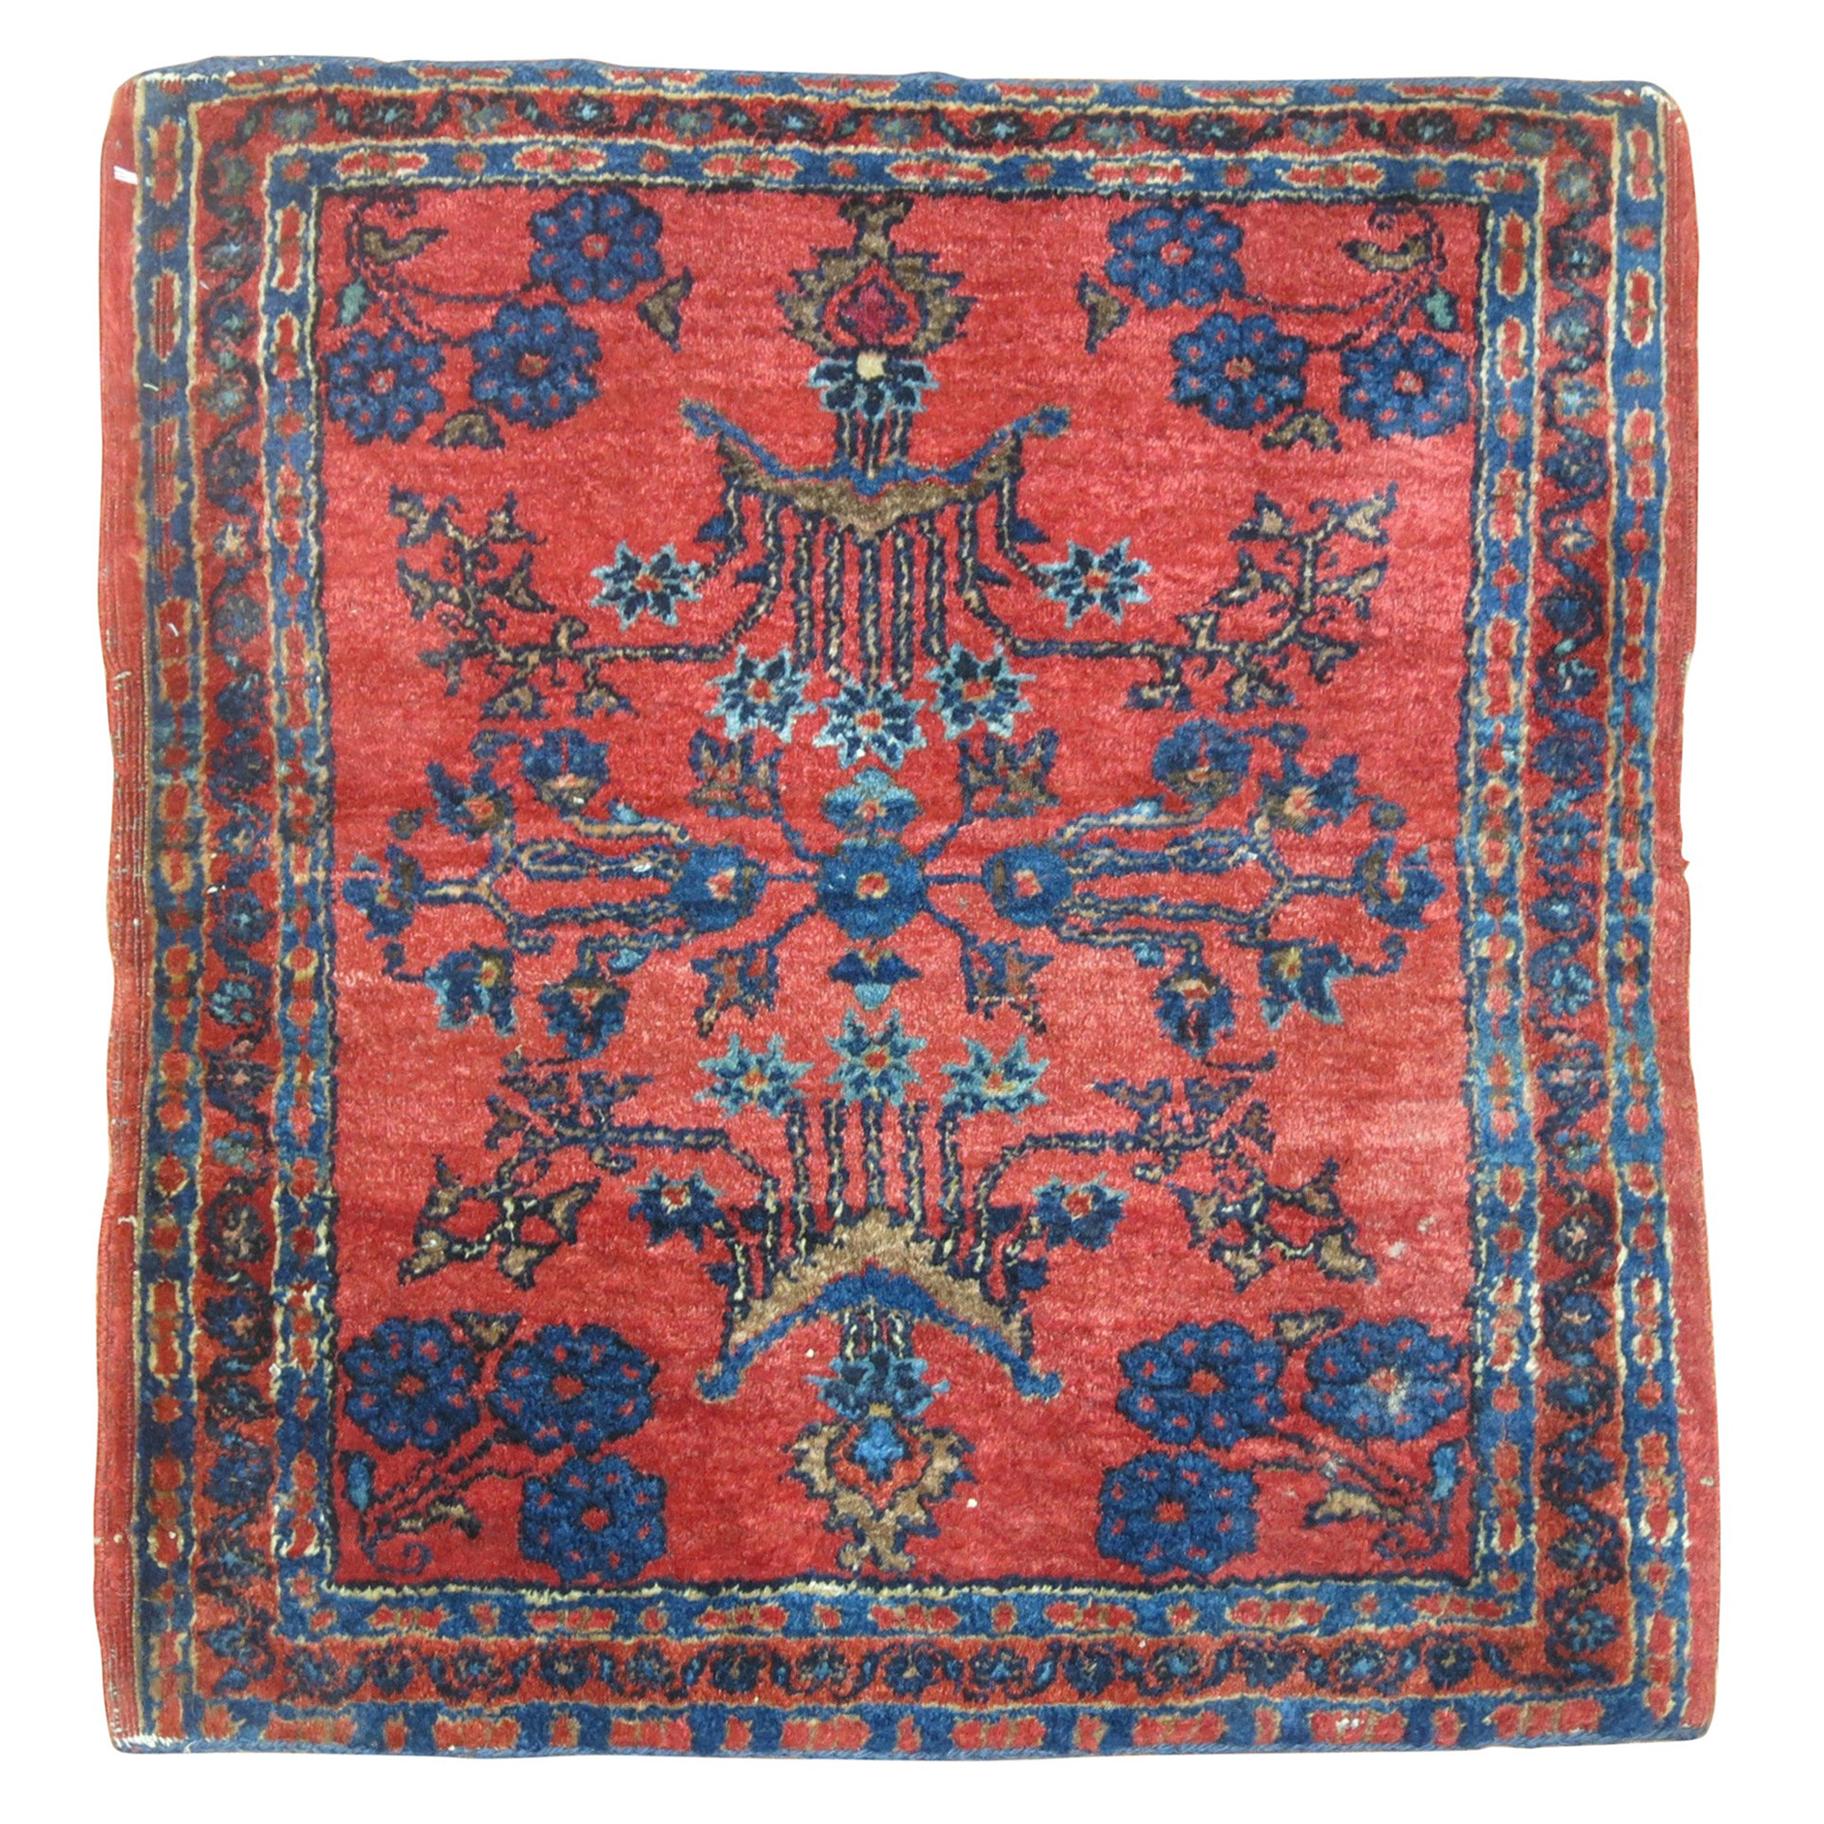 Tapis carré Sarouk oriental traditionnel persan ancien rouge et bleu de taille traditionnelle